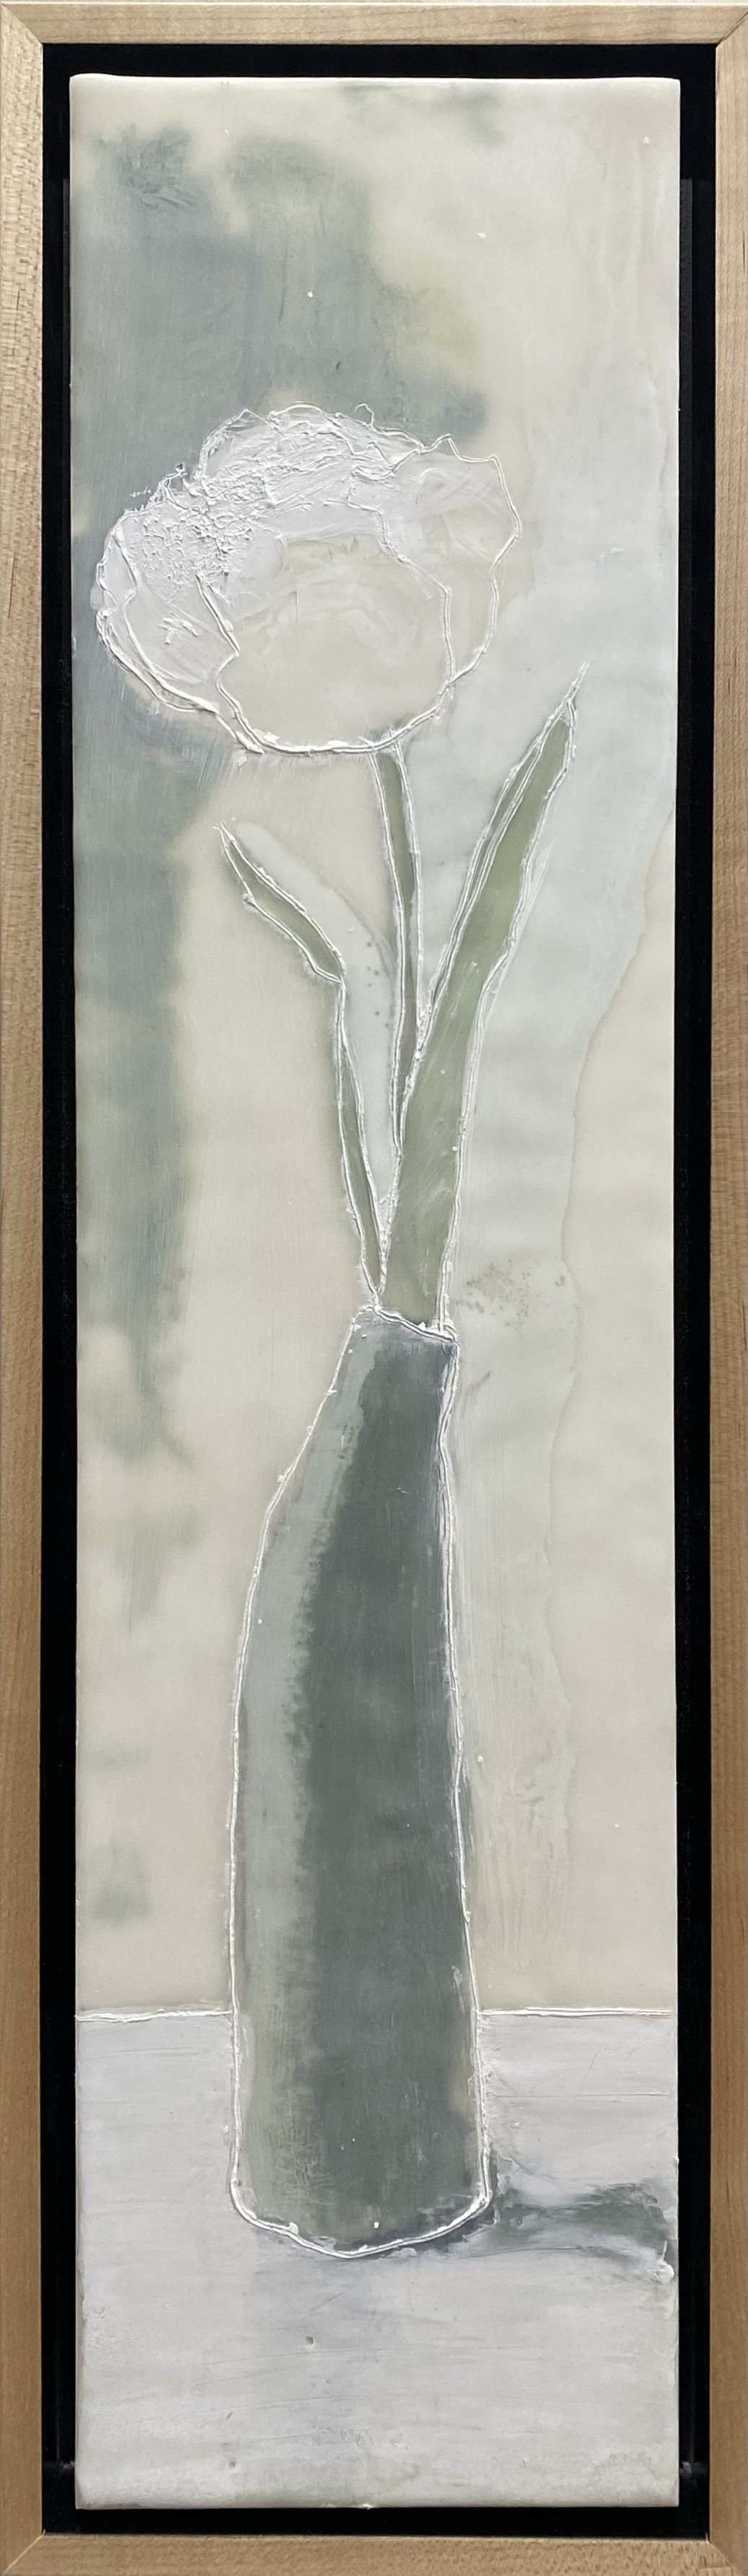 Amy Vander Els - White Tulip, Grey Vase.jpg